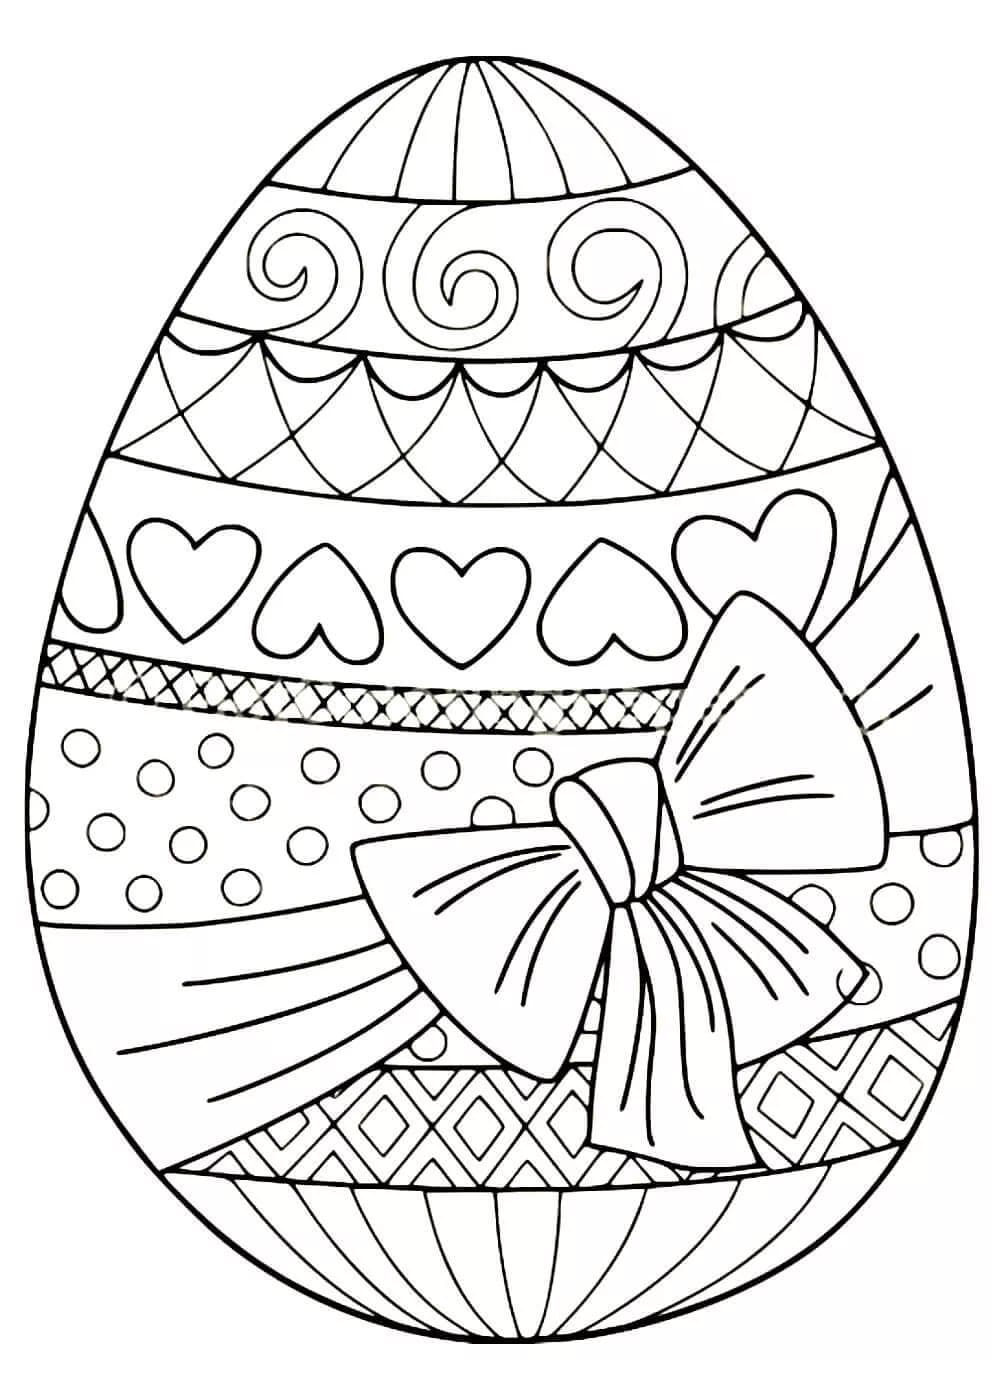 пасхальное яйцо раскраска для детей 4